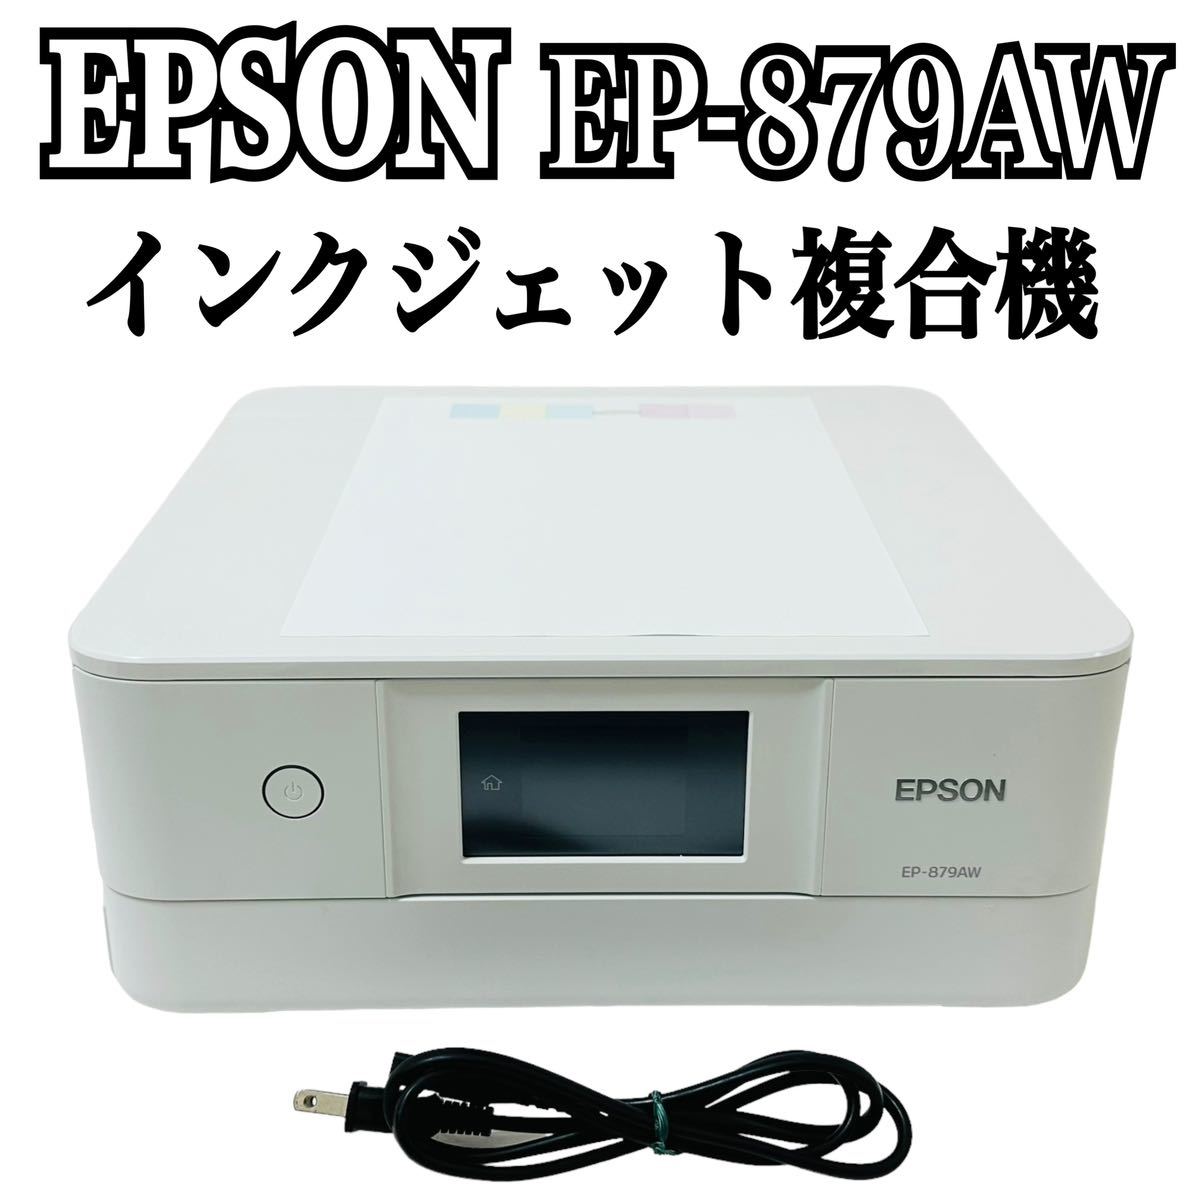 ★ 人気商品 ★ EPSON エプソン Colorio カラリオ インクジェット複合機 EP-879AW プリンター 複合機 インクジェットプリンター EP-879A_画像1